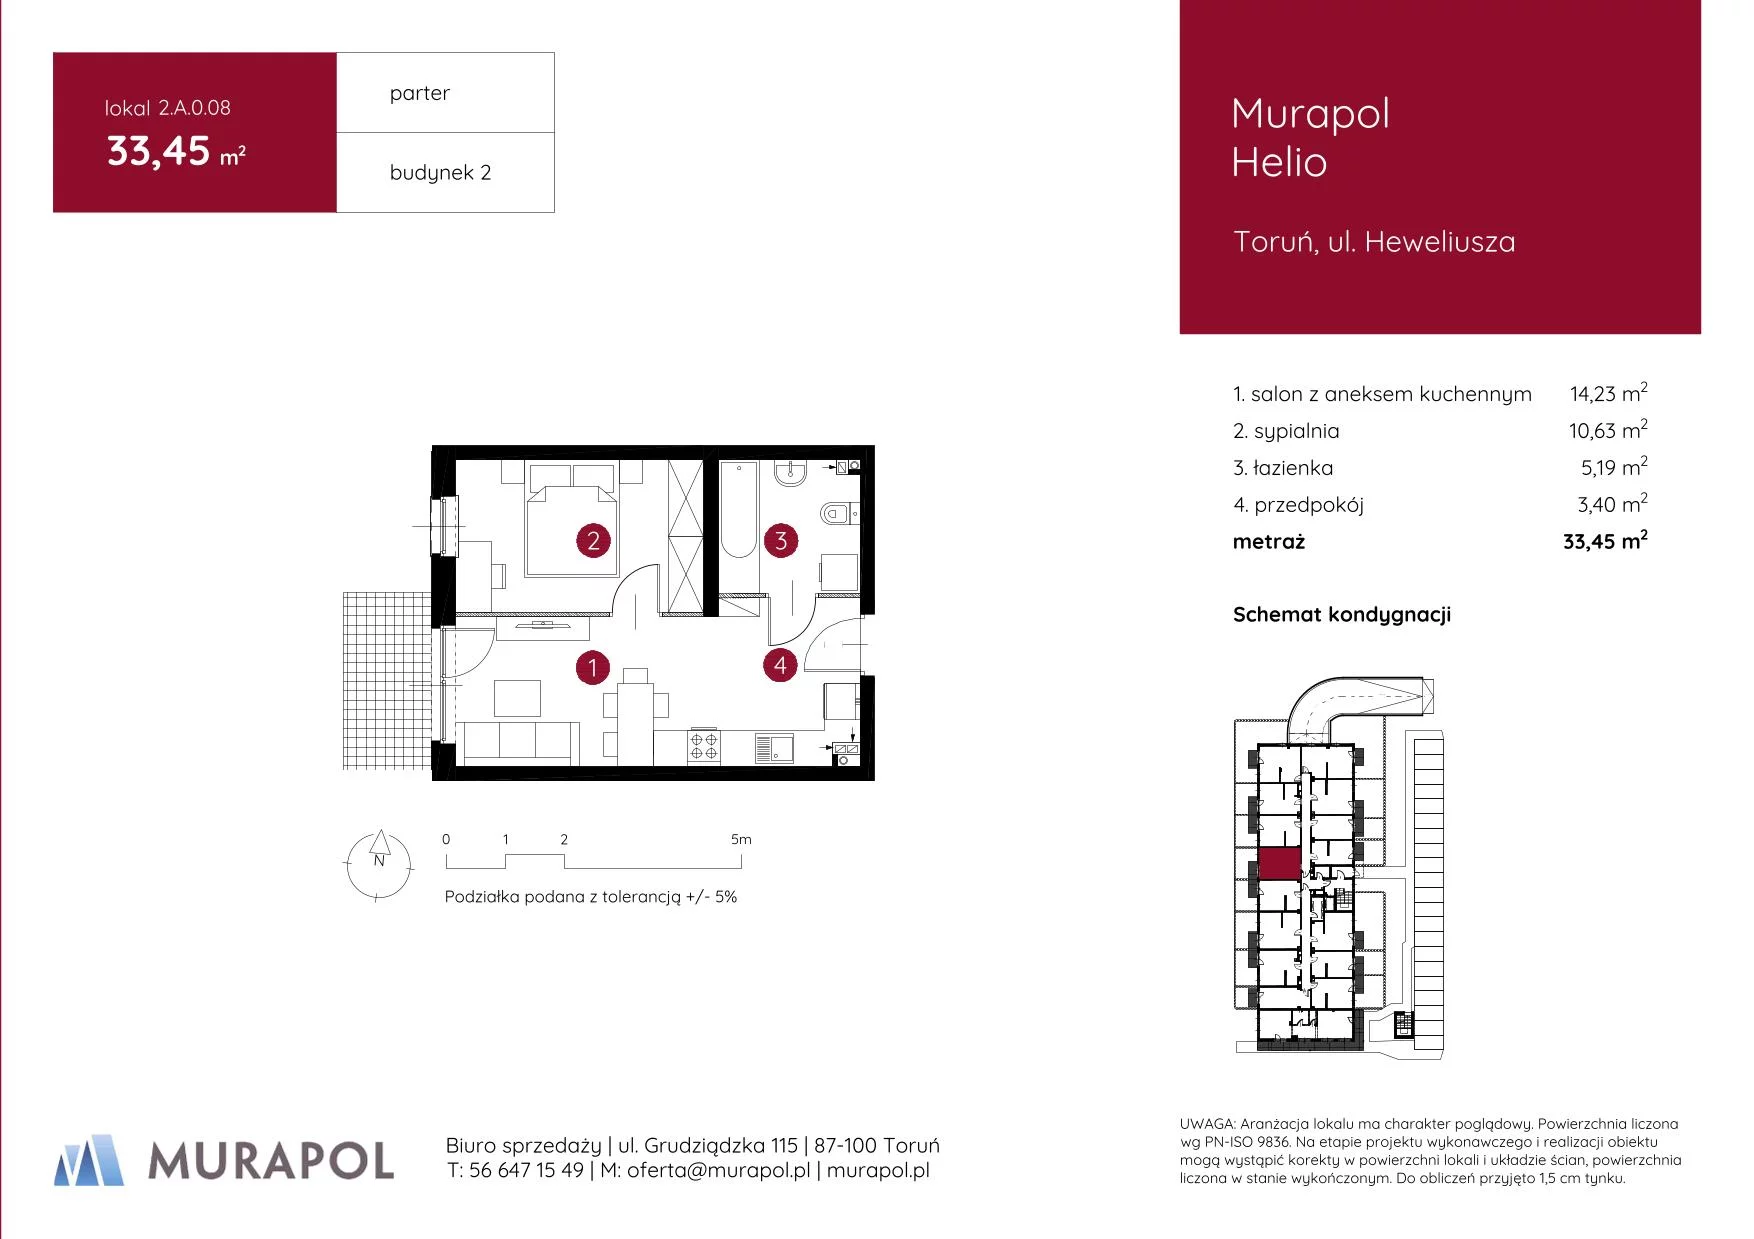 Mieszkanie 33,45 m², parter, oferta nr 2.A.0.08, Murapol Helio, Toruń, Wrzosy, JAR, ul. Heweliusza